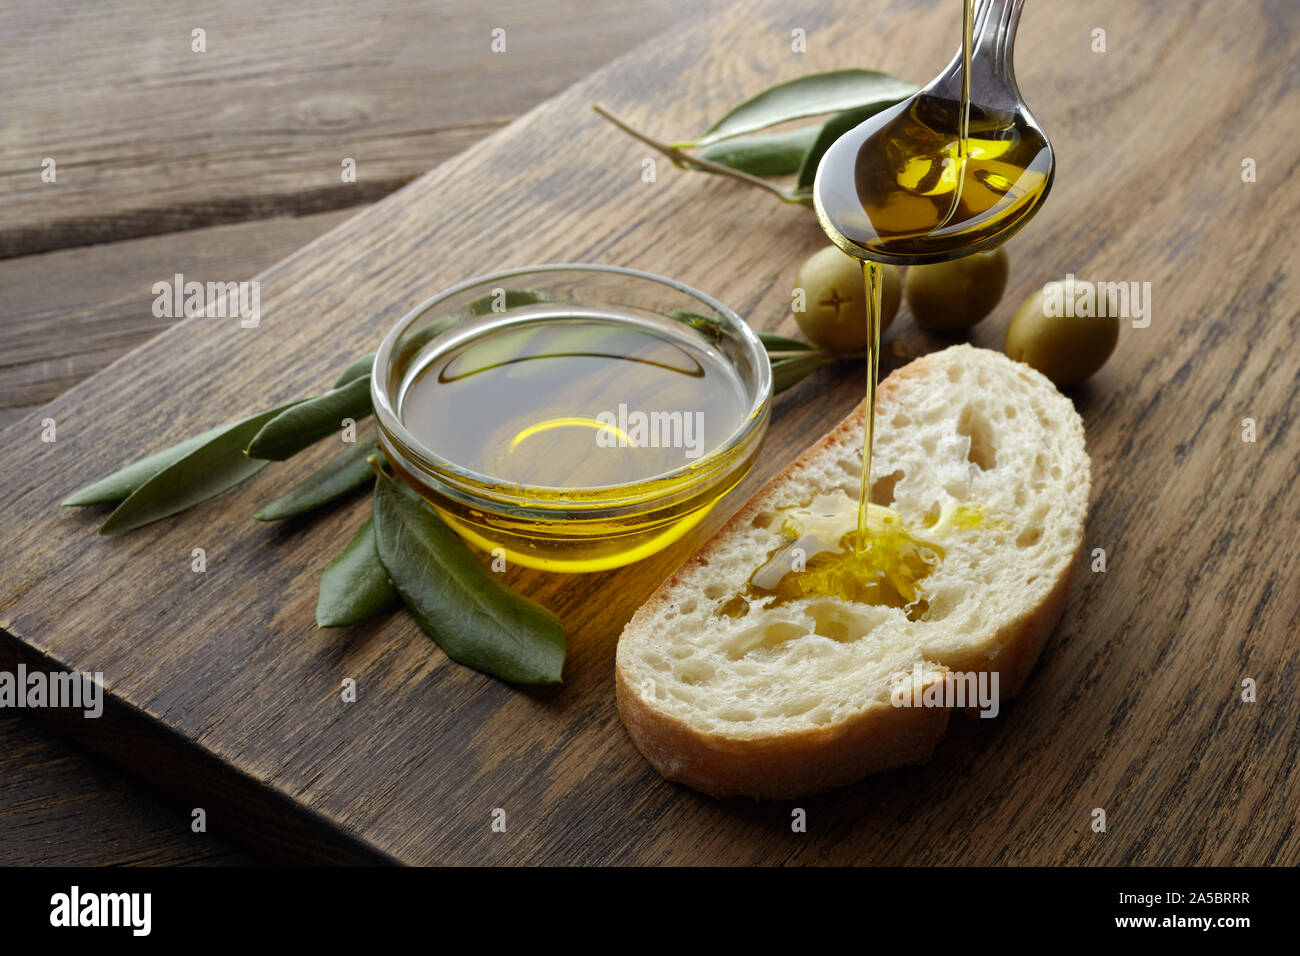 Scheibe Brot gewürzt mit Olivenöl auf hölzernen Hintergrund Stockfoto